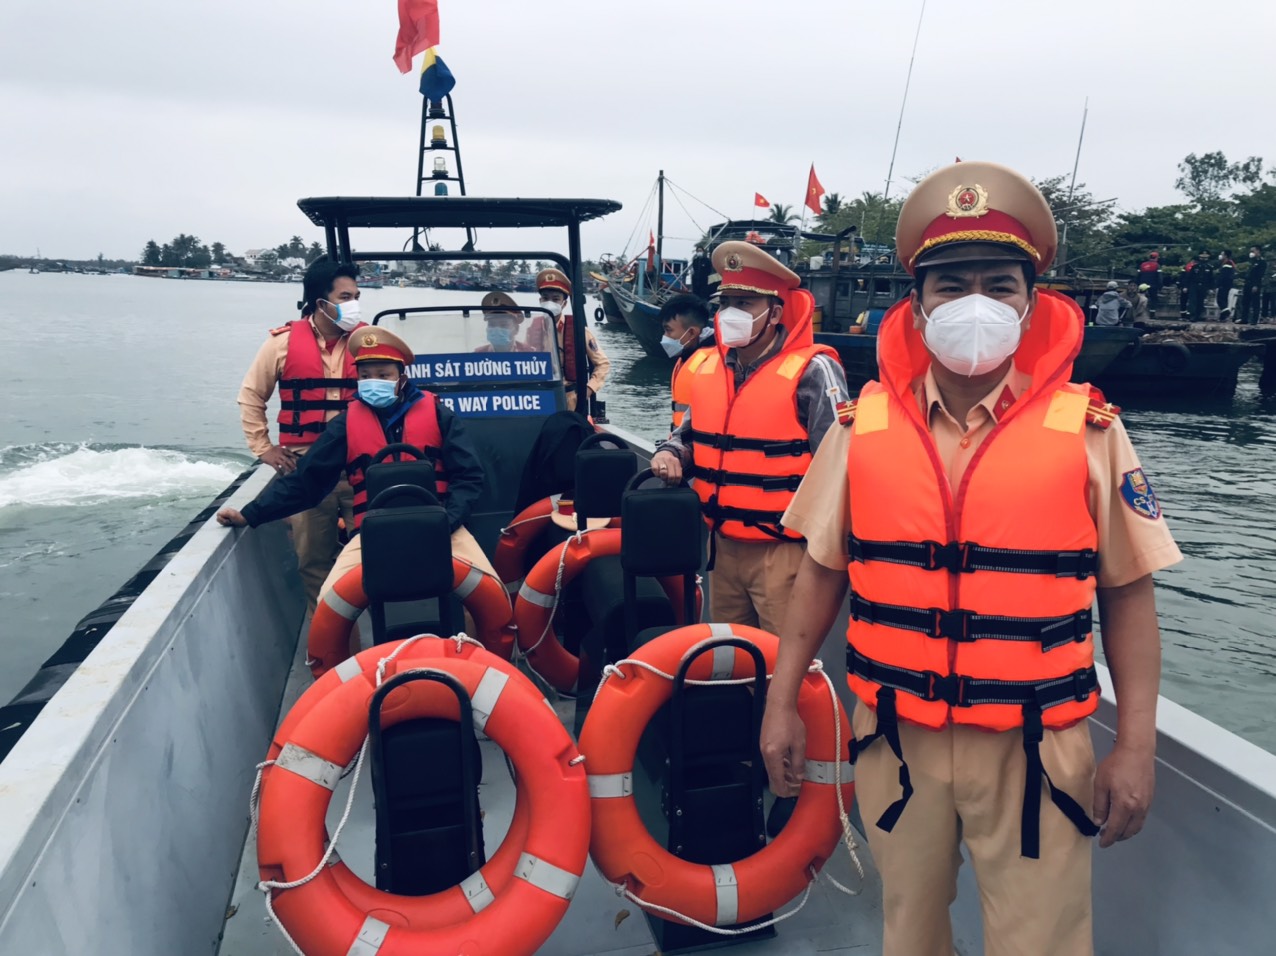 Cục CSGT đang phối hợp cùng các lực lượng thuộc Quân đội, Bộ đội Biên phòng, Công an tỉnh Quảng Nam tìm kiếm nạn nhân mất tích trong vụ chìm ca nô ở biển Cửa Đại